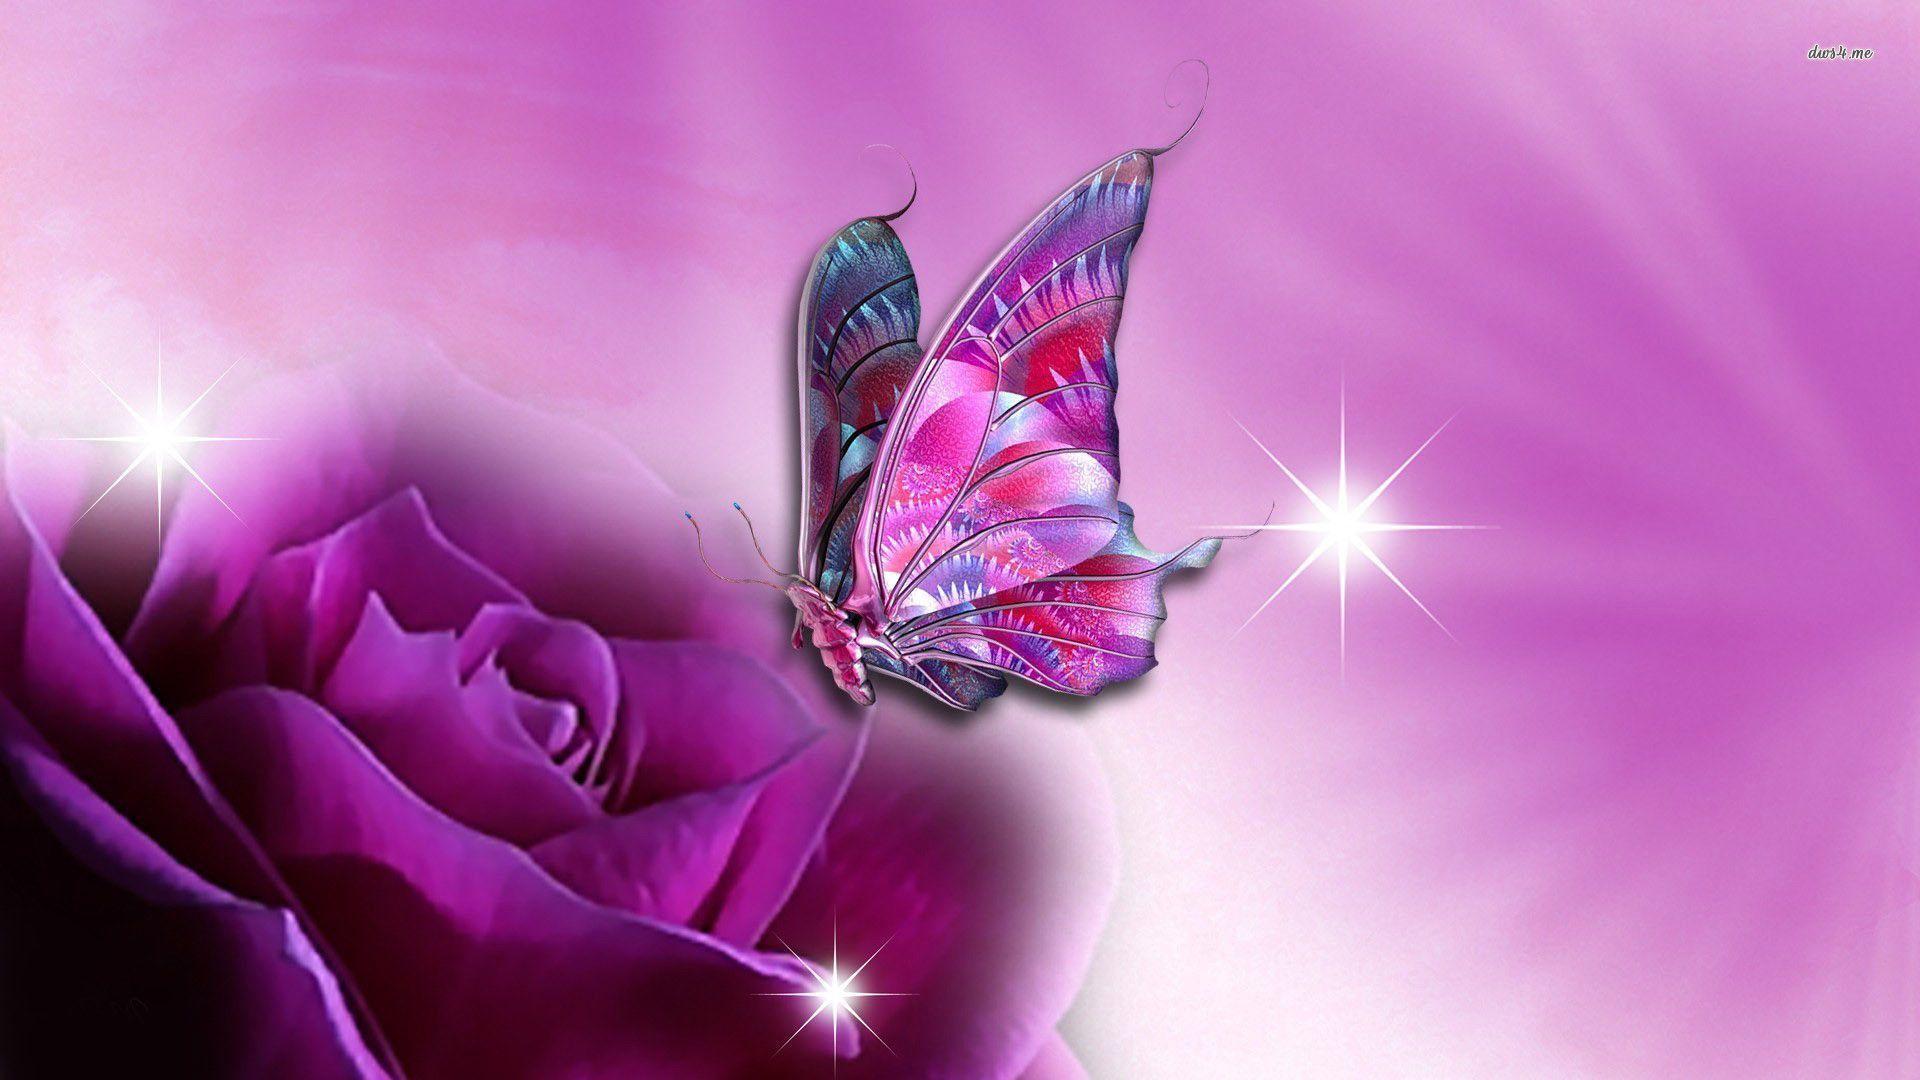 Butterfly on purple rose wallpaper Art wallpaper - #